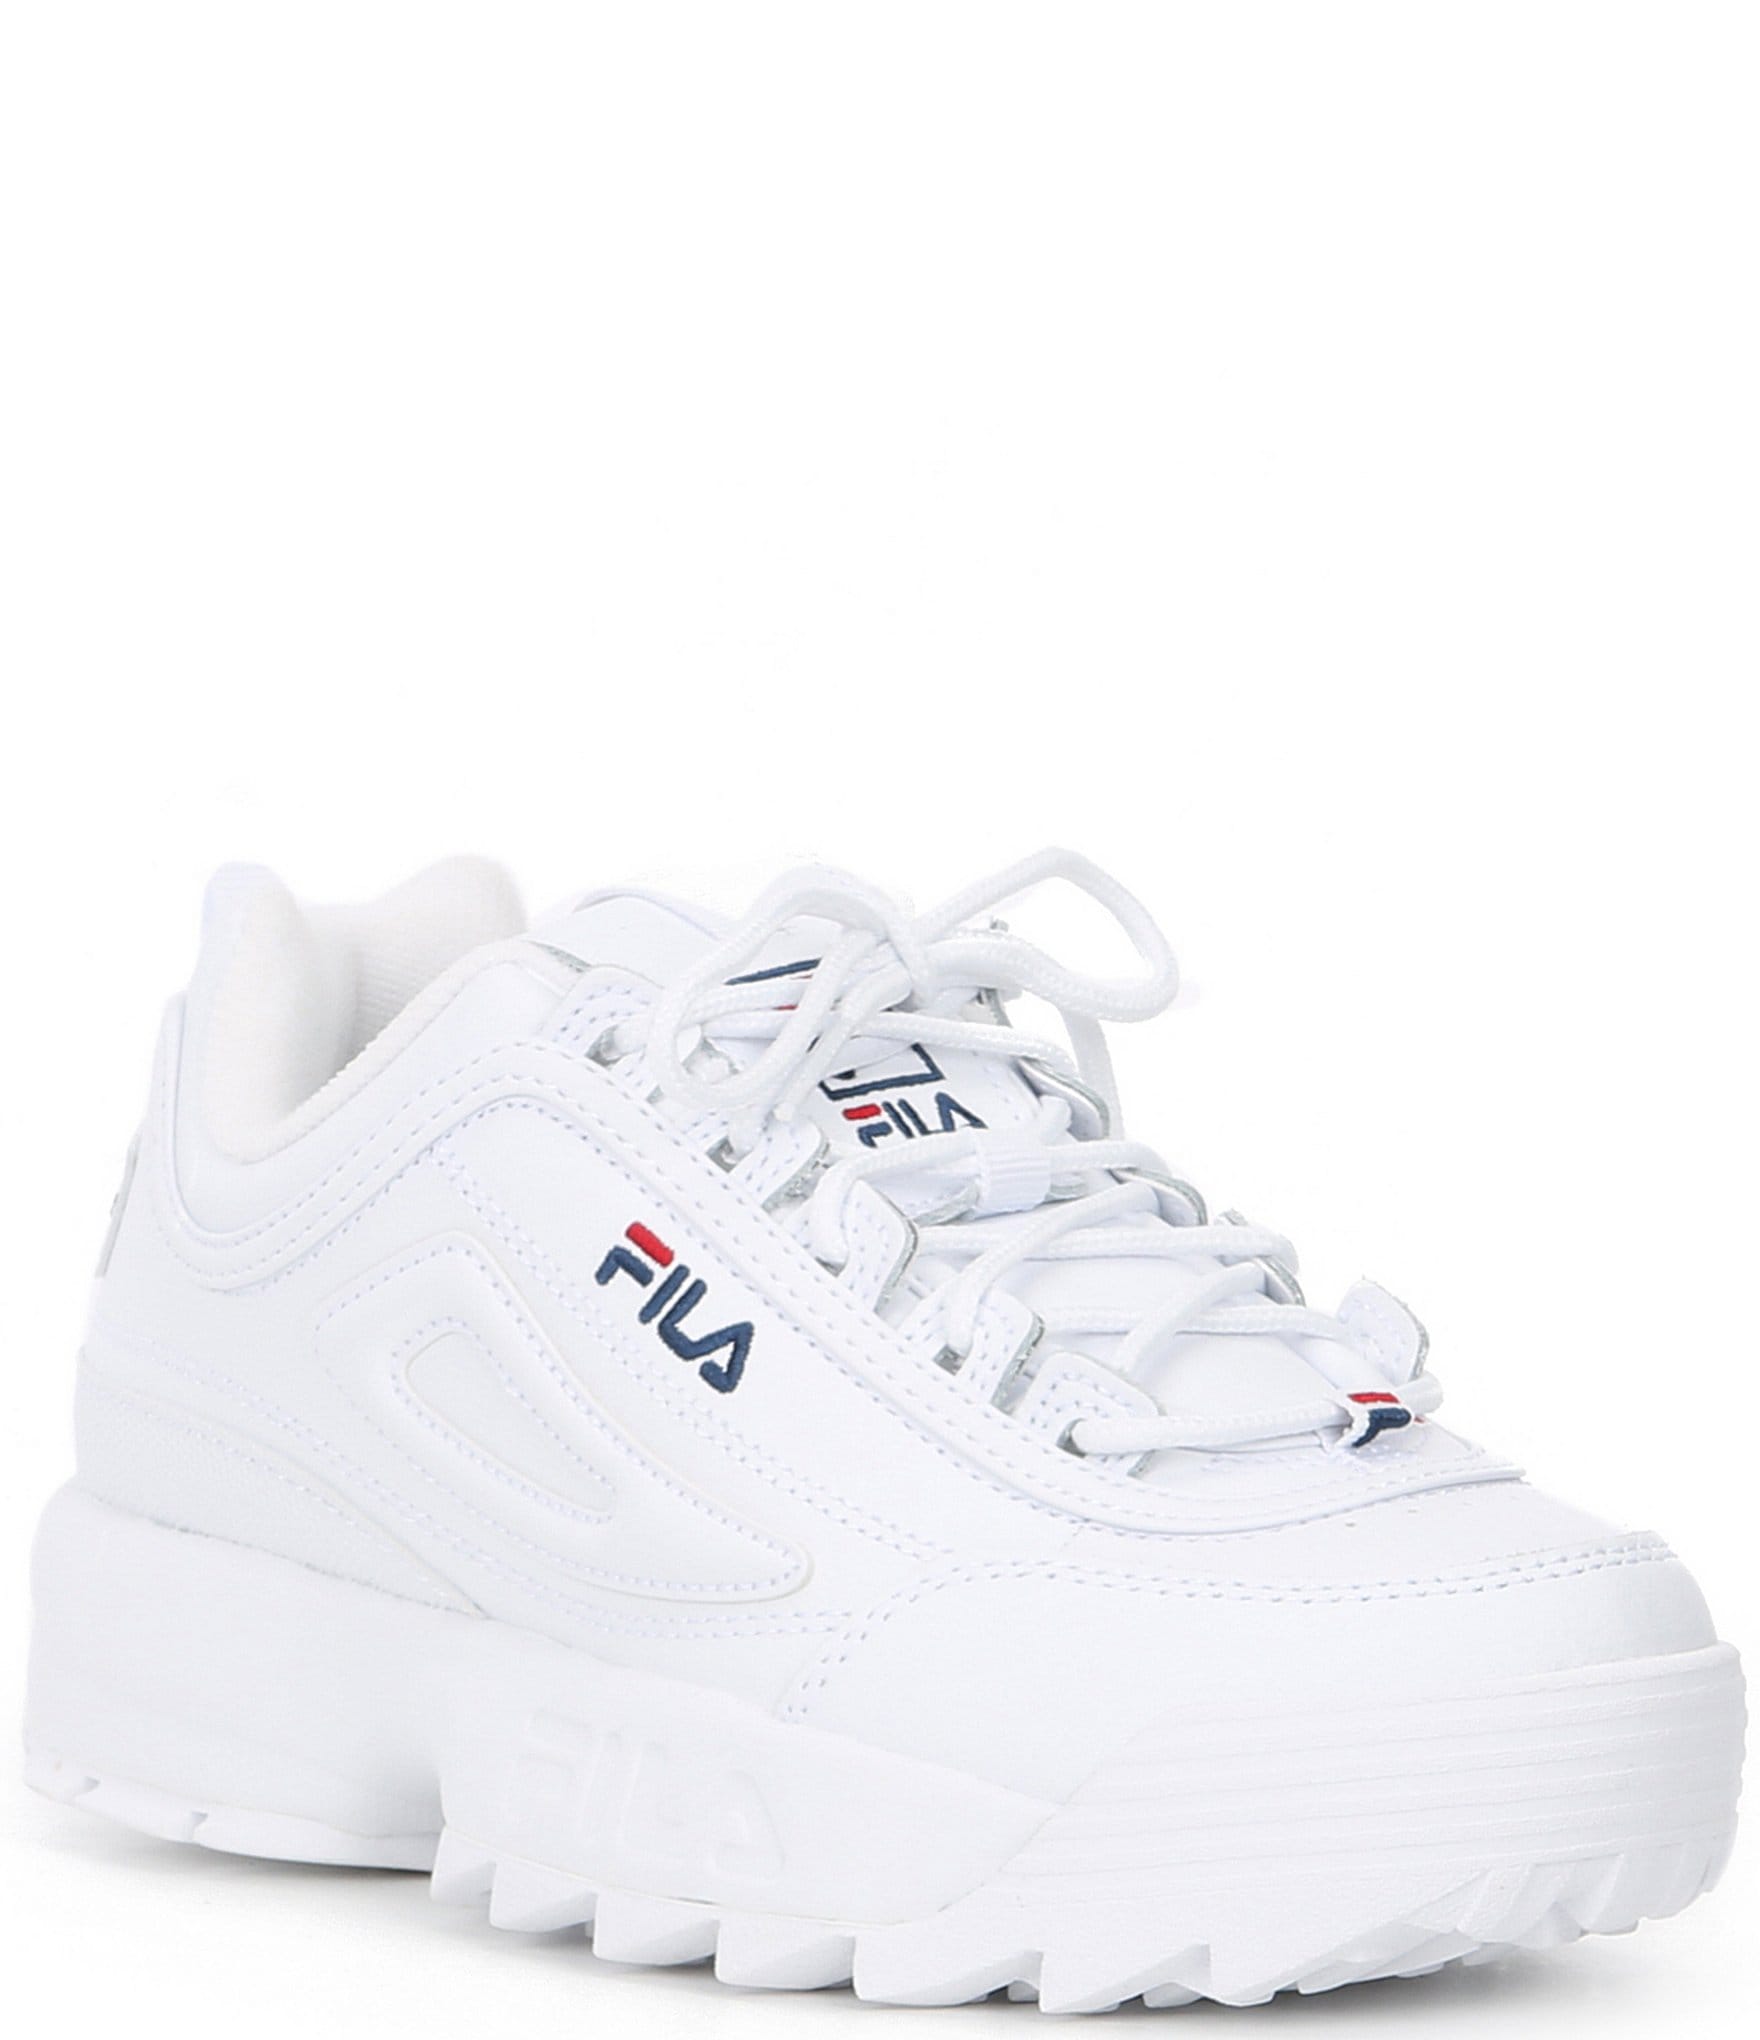 cheap white fila shoes